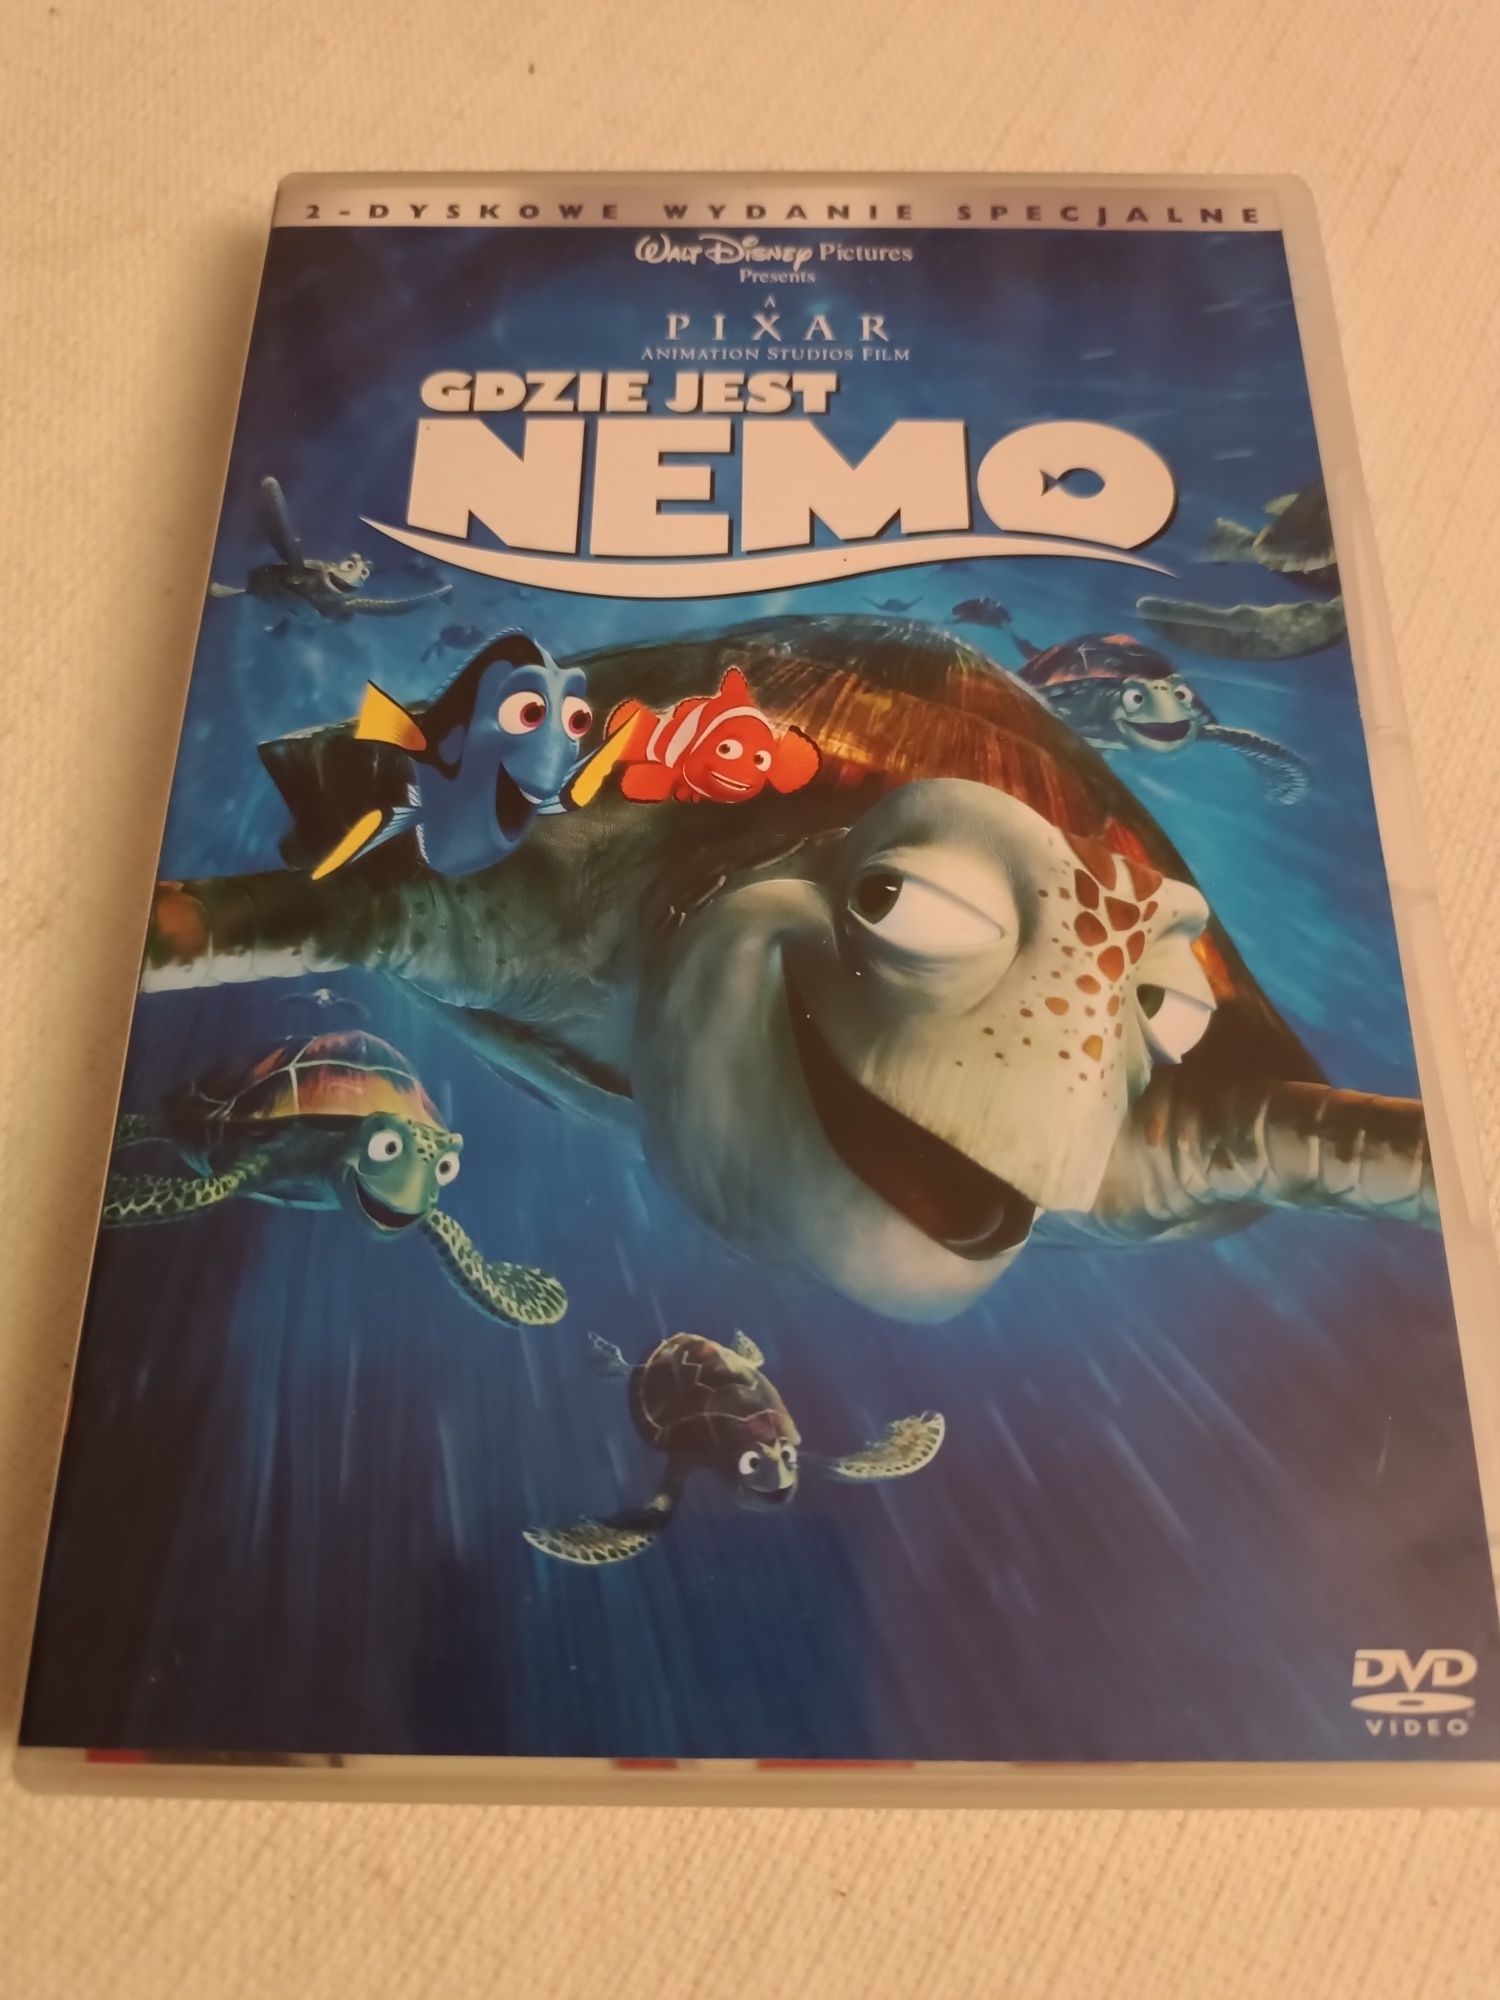 Gdzie Jest Nemo DVD - wydanie specjalne